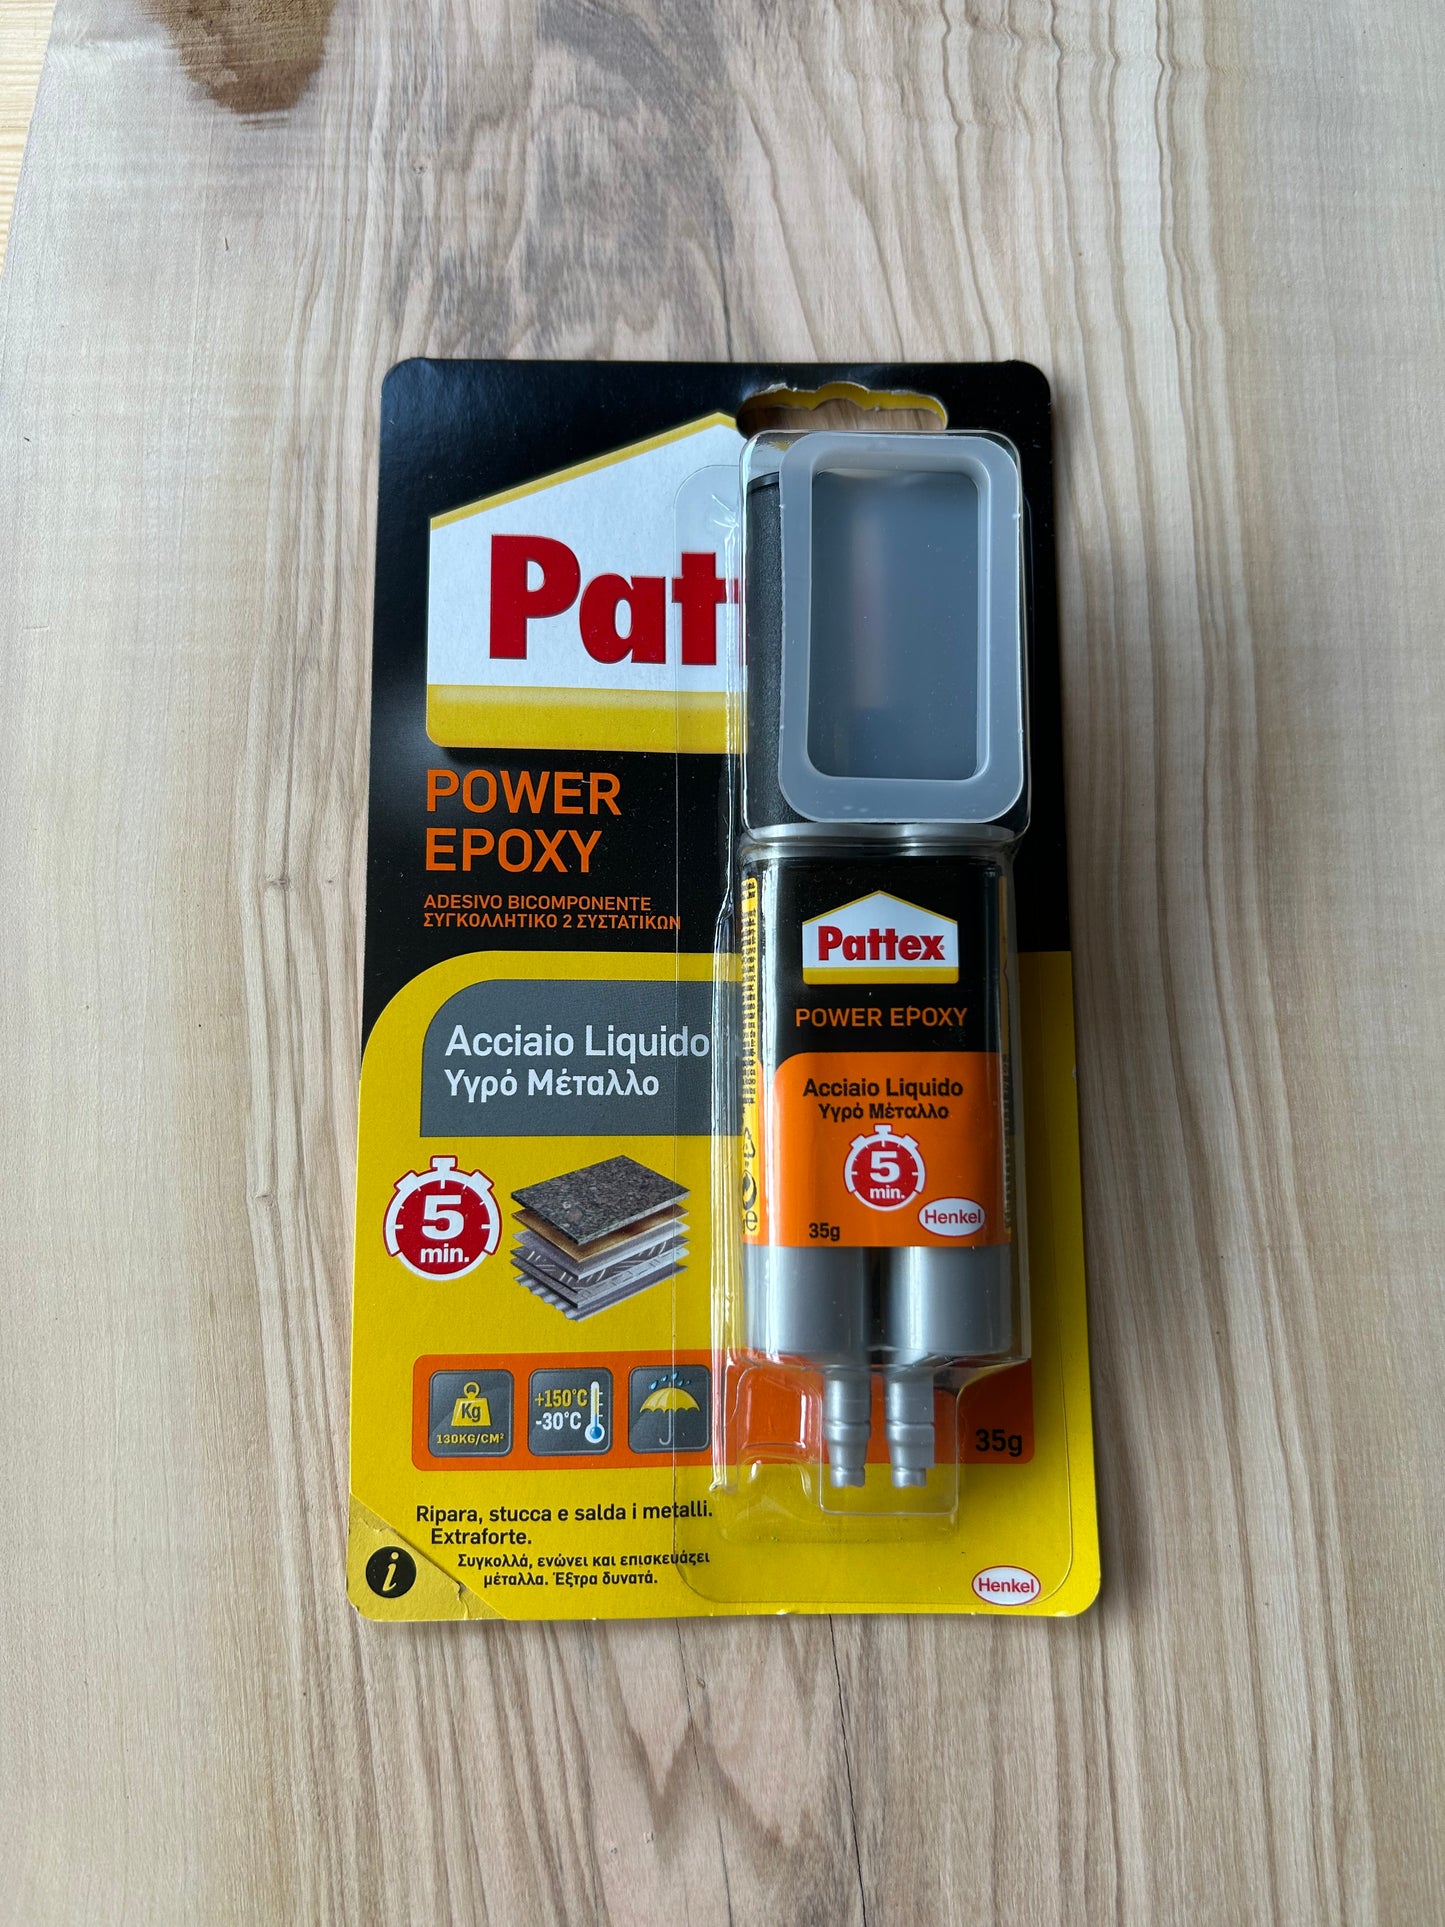 Pattex Power Epoxy - Adesivo Bicomponente Acciaio Liquido 25ml/35gr